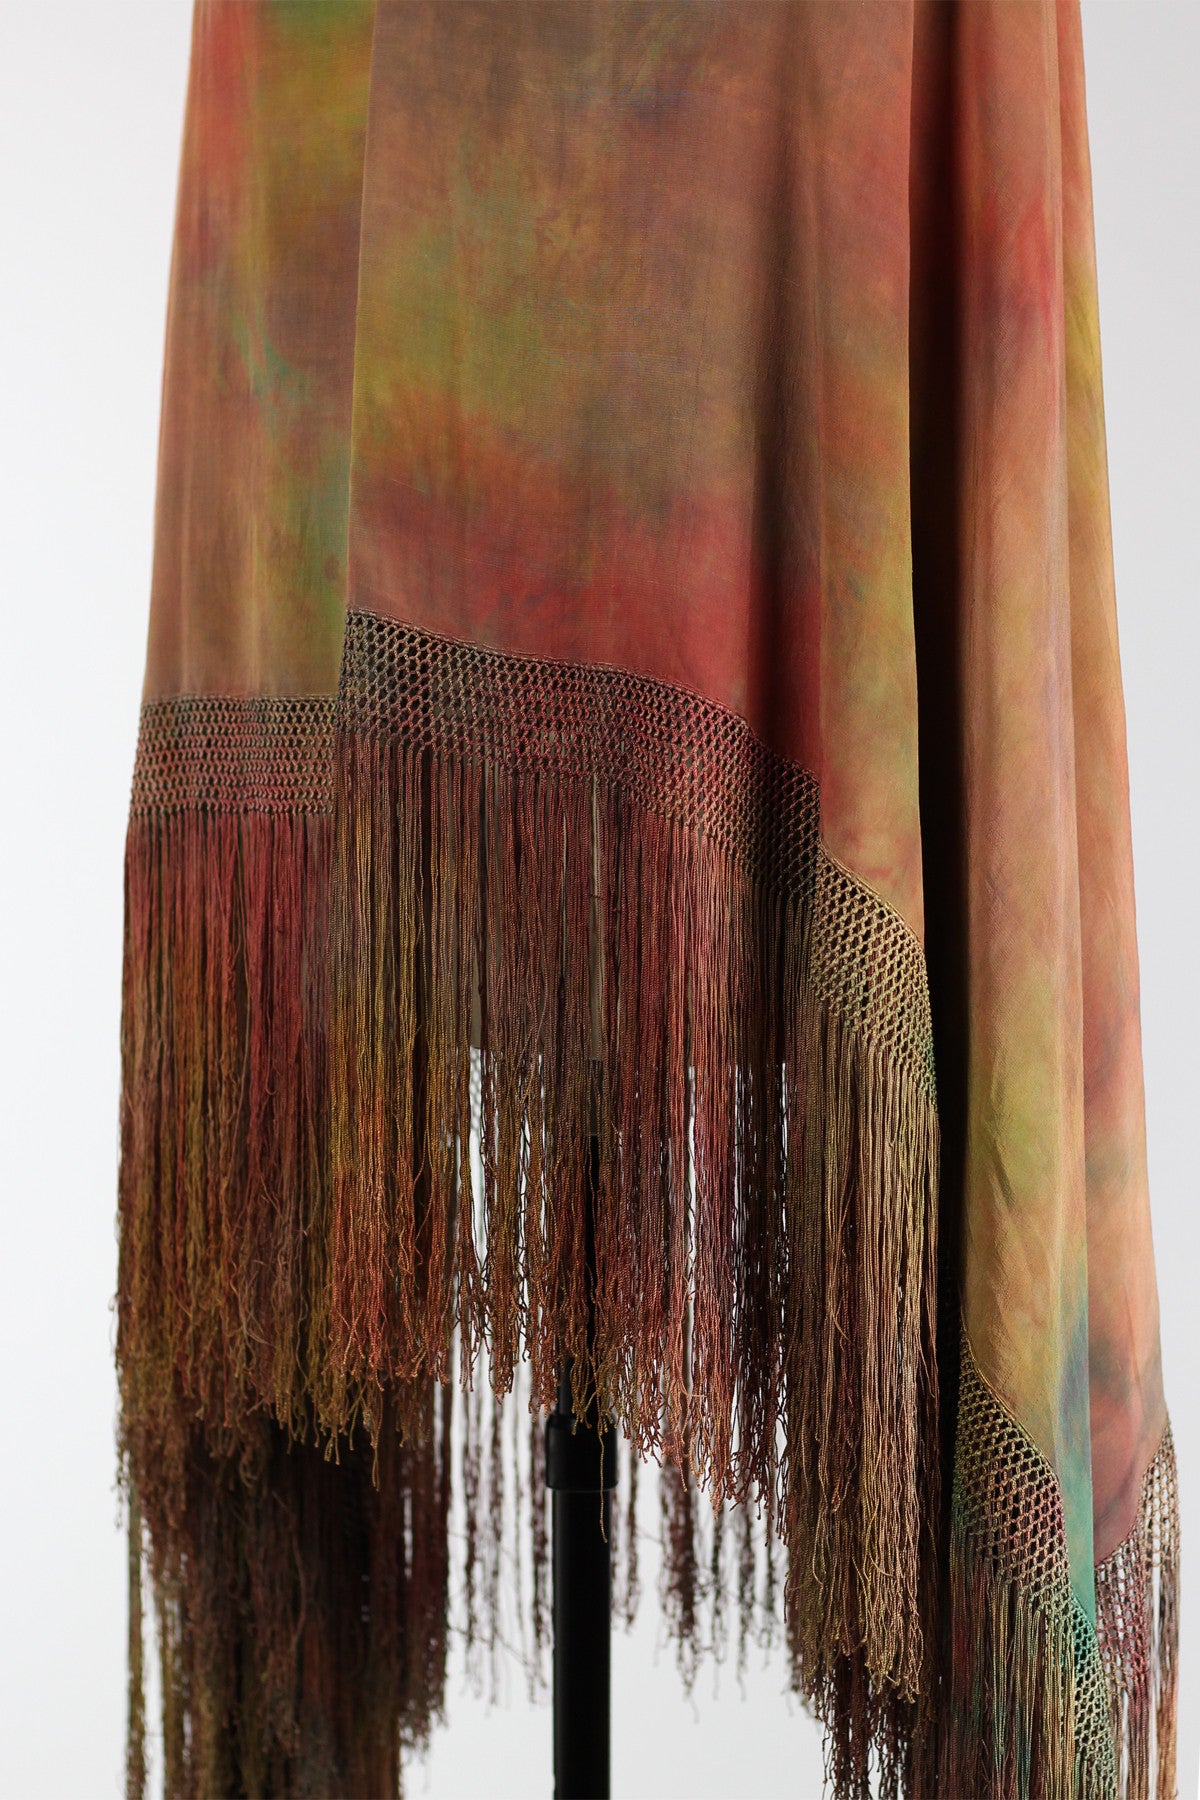 1920s Tie Dye Antique Chinese Silk Shawl